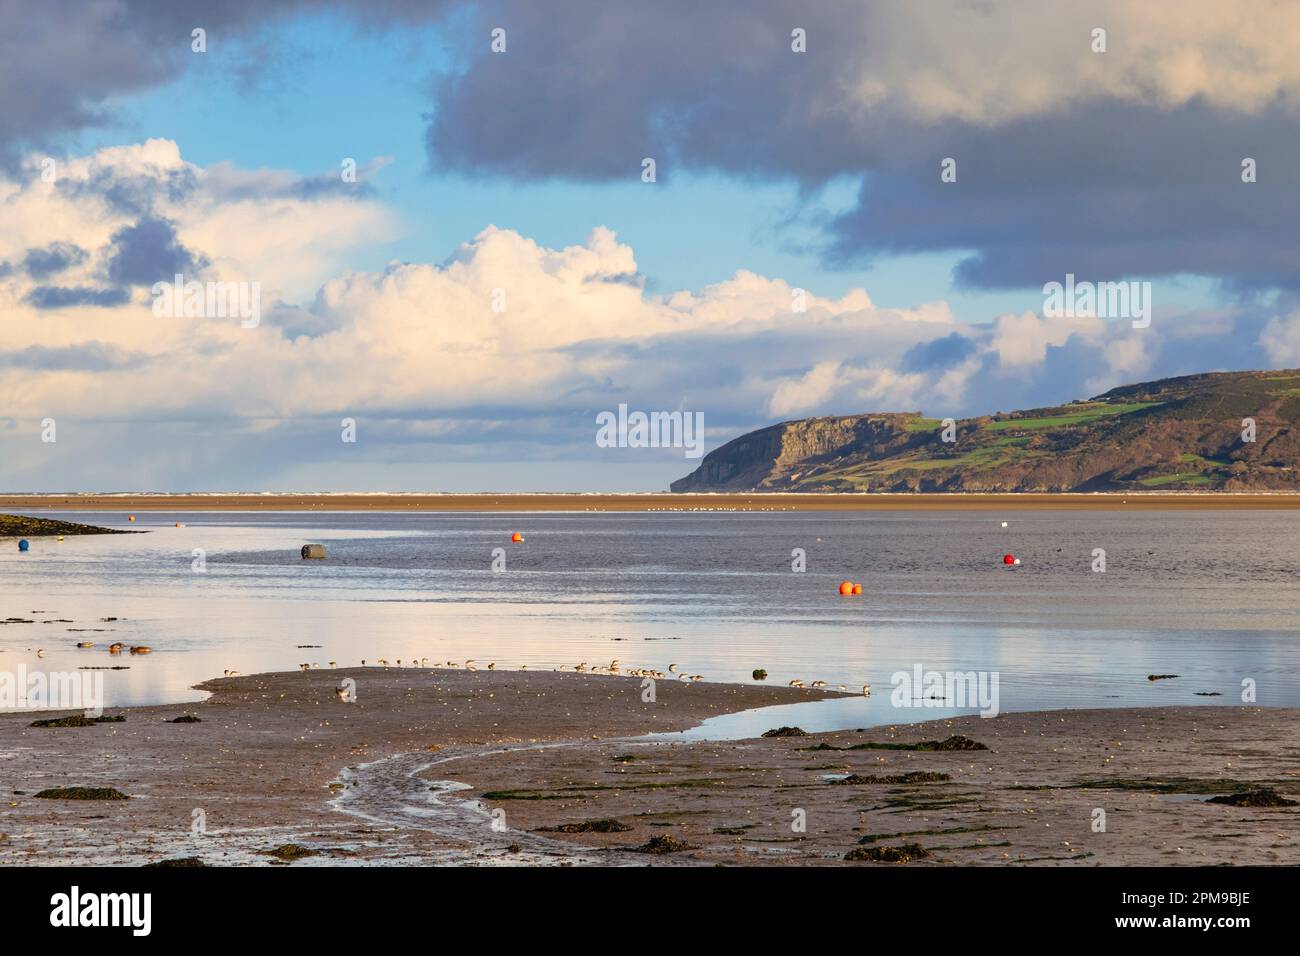 Un troupeau d'oiseaux à gué de Dunlin (Calidris alpina) se nourrit sur le rivage avant la marée entrante dans la baie de Red Wharf, à Benllech, île d'Anglesey, au pays de Galles, au Royaume-Uni Banque D'Images